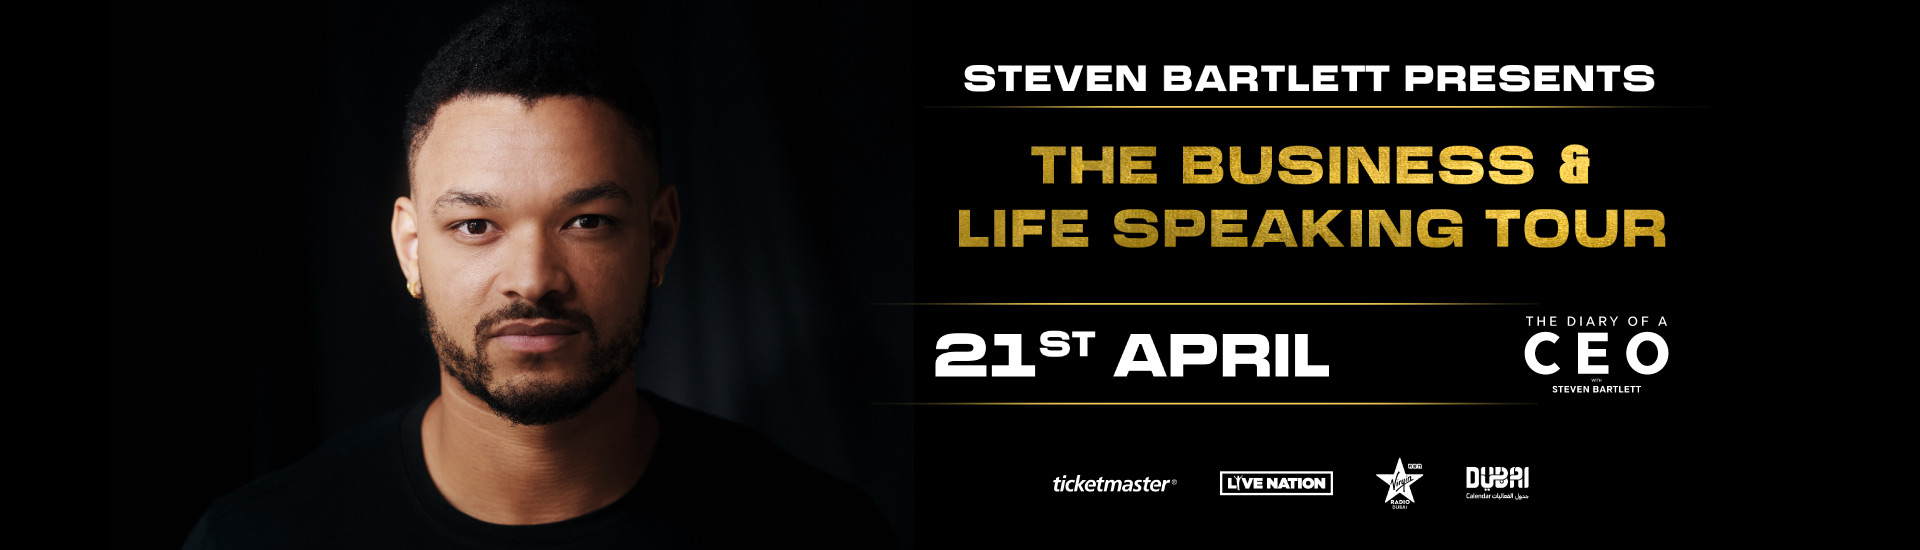 STEVEN BARTLETT PRESENTS : THE BUSINESS & LIFE SPEAKING TOUR